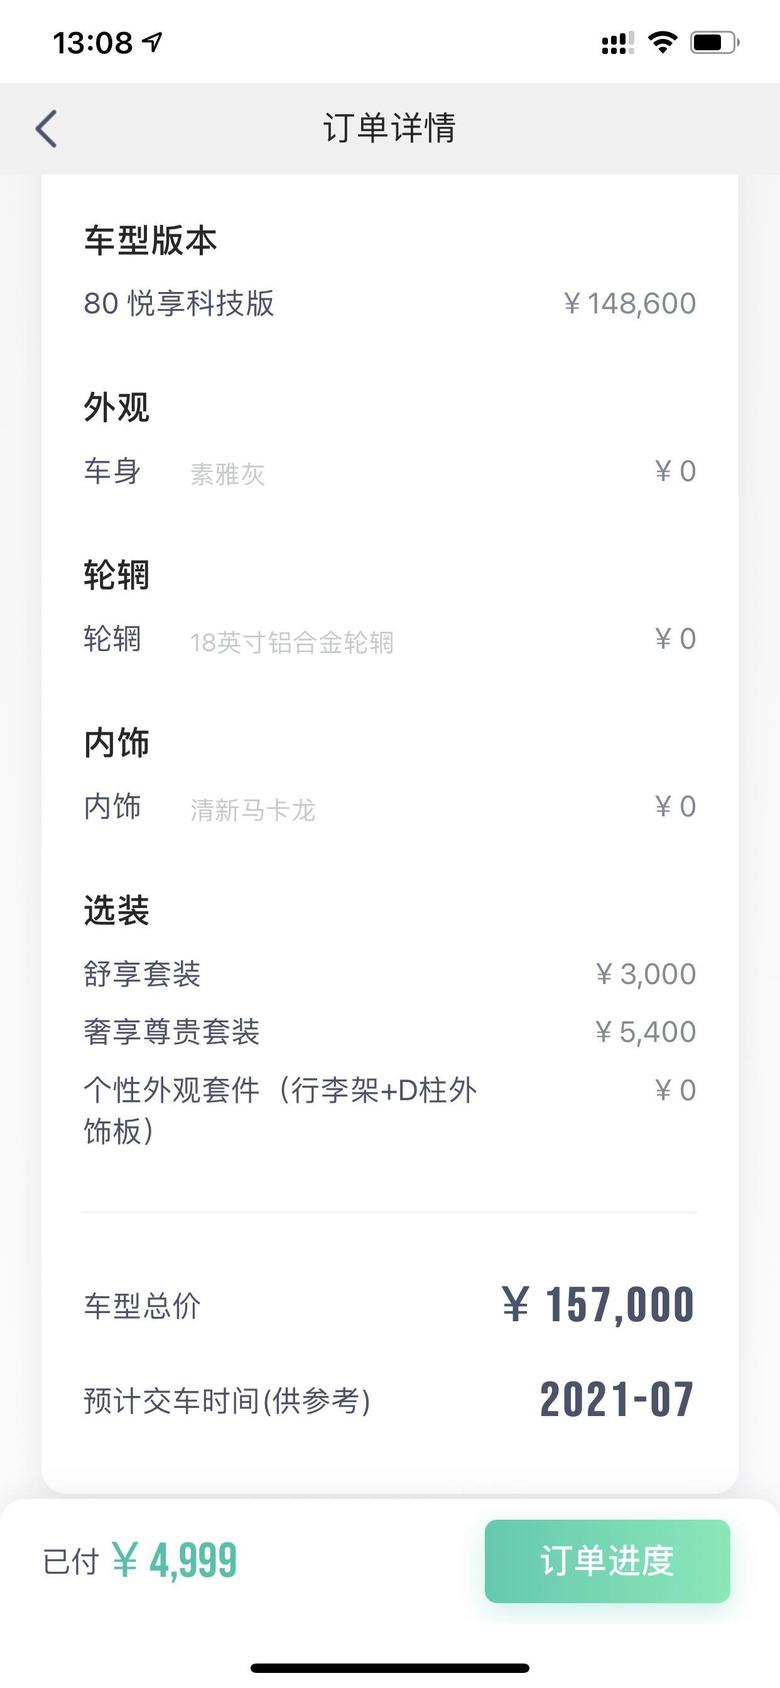 aion y转让上海地区80科技版，喜欢的朋友可以私聊。价格优惠